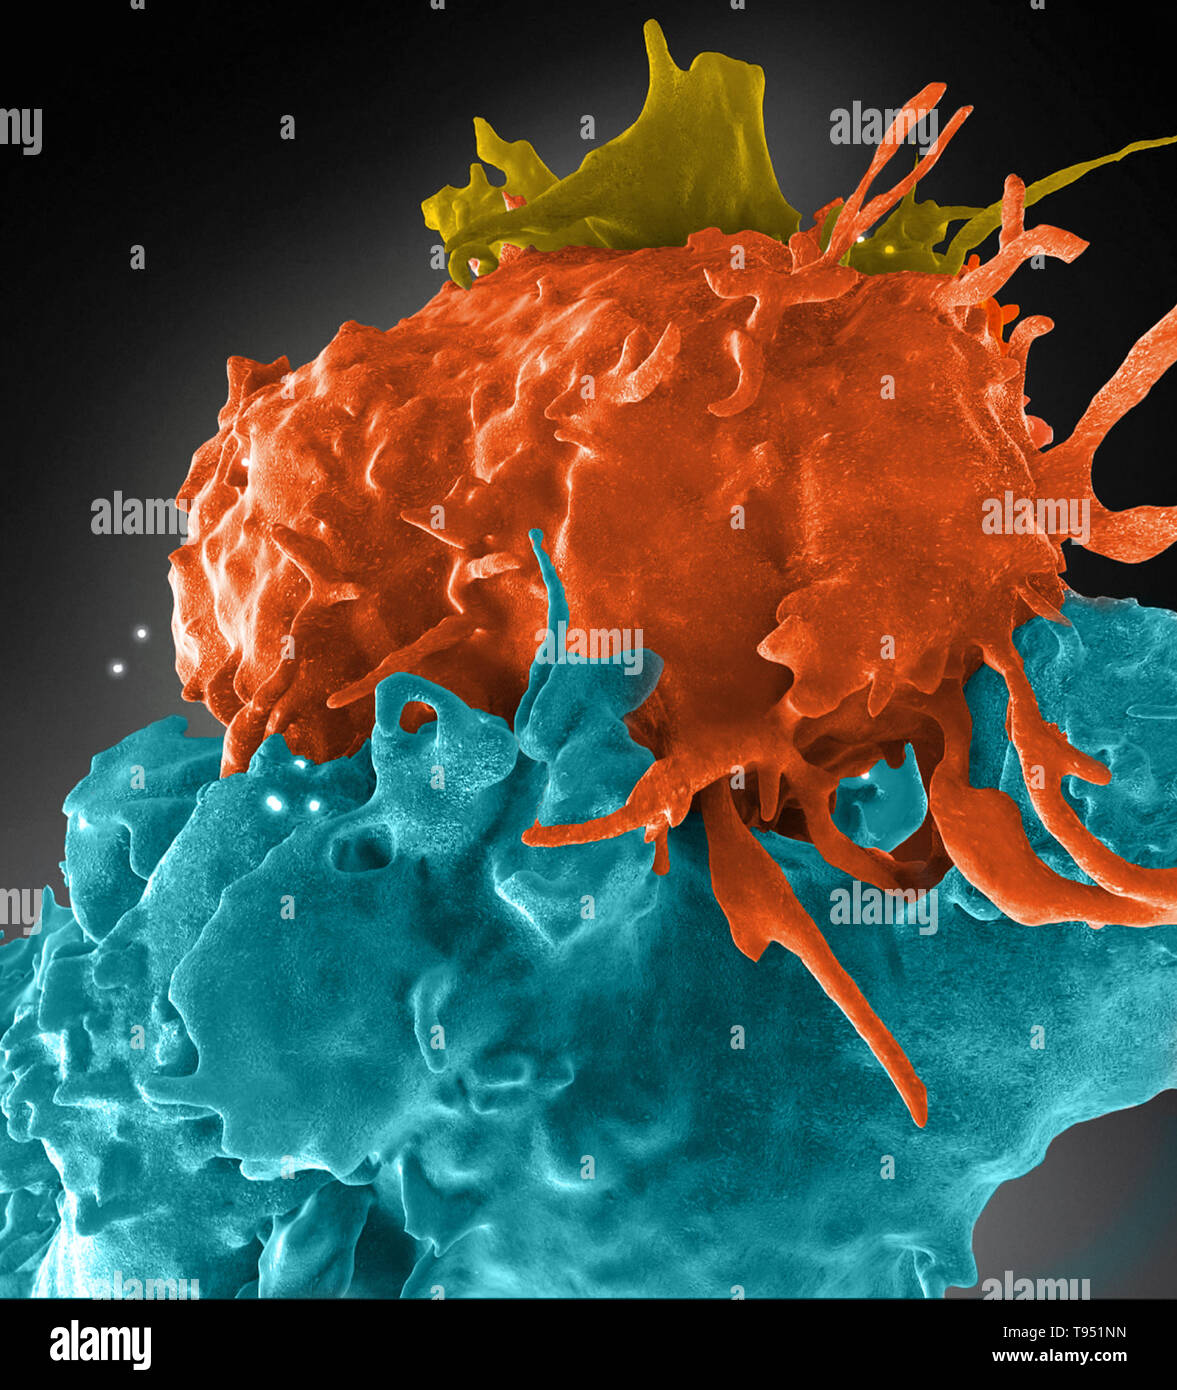 Dreidimensionale Struktur von HIV-Infizierten (Blau, Grün) und nicht infizierten (braun, violett) T-Zellen interagieren. Eine Zelle (braun) hat eine Verlängerung aufgewickelt um seine nichtinfizierten Nachbar (lila) zu erreichen, eine infizierte Zelle (blau). Erworbenen Immunschwäche-Syndrom (AIDS) ist eine chronische, potentiell lebensbedrohliche Erkrankung, die durch das Human Immunodeficiency Virus (HIV). Durch die Schädigung des Immunsystems, HIV beeinträchtigt die Fähigkeit des Körpers, den organismen, die Krankheit zu bekämpfen. Stockfoto